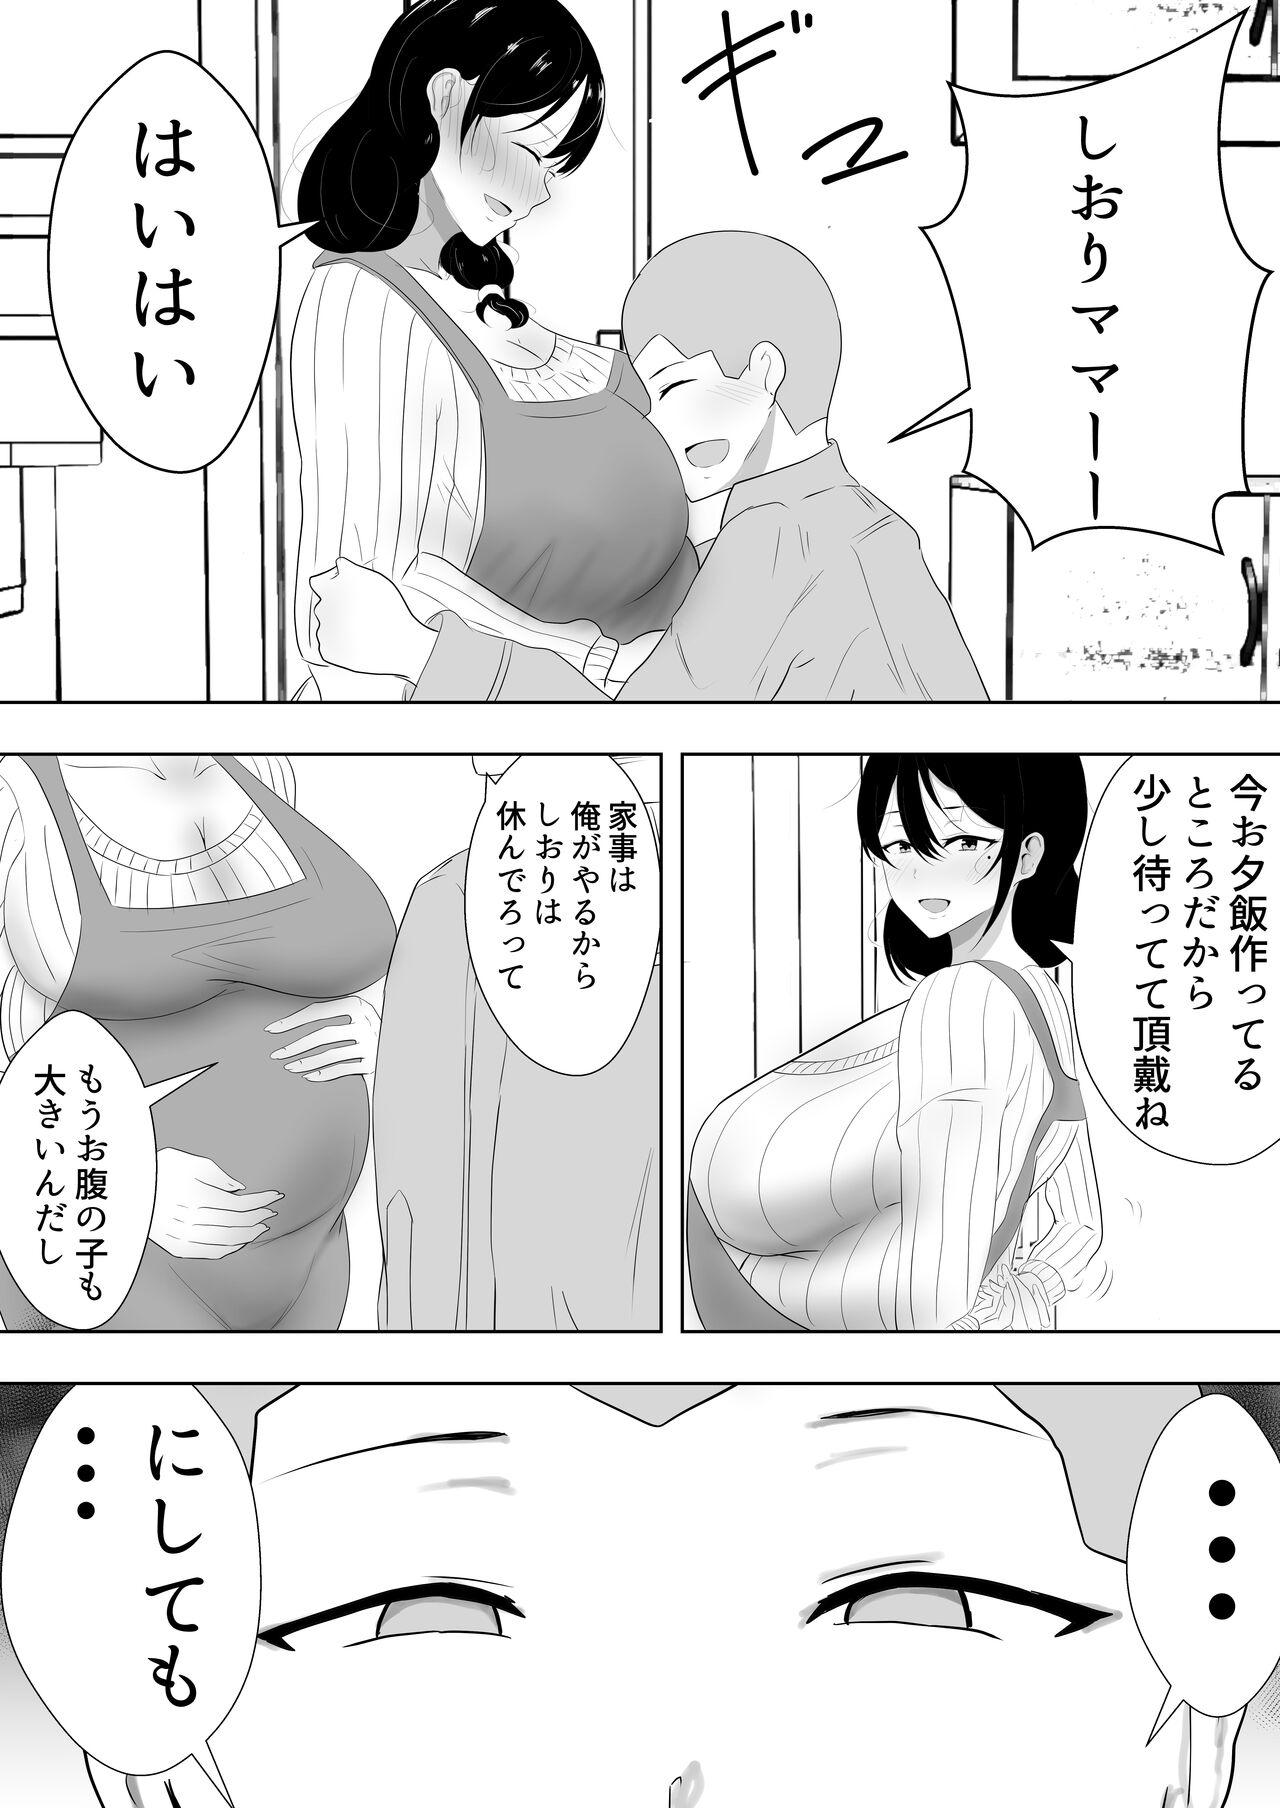 Speculum Tomokano kaachan4 kakioroshi - Original Hoe - Page 4